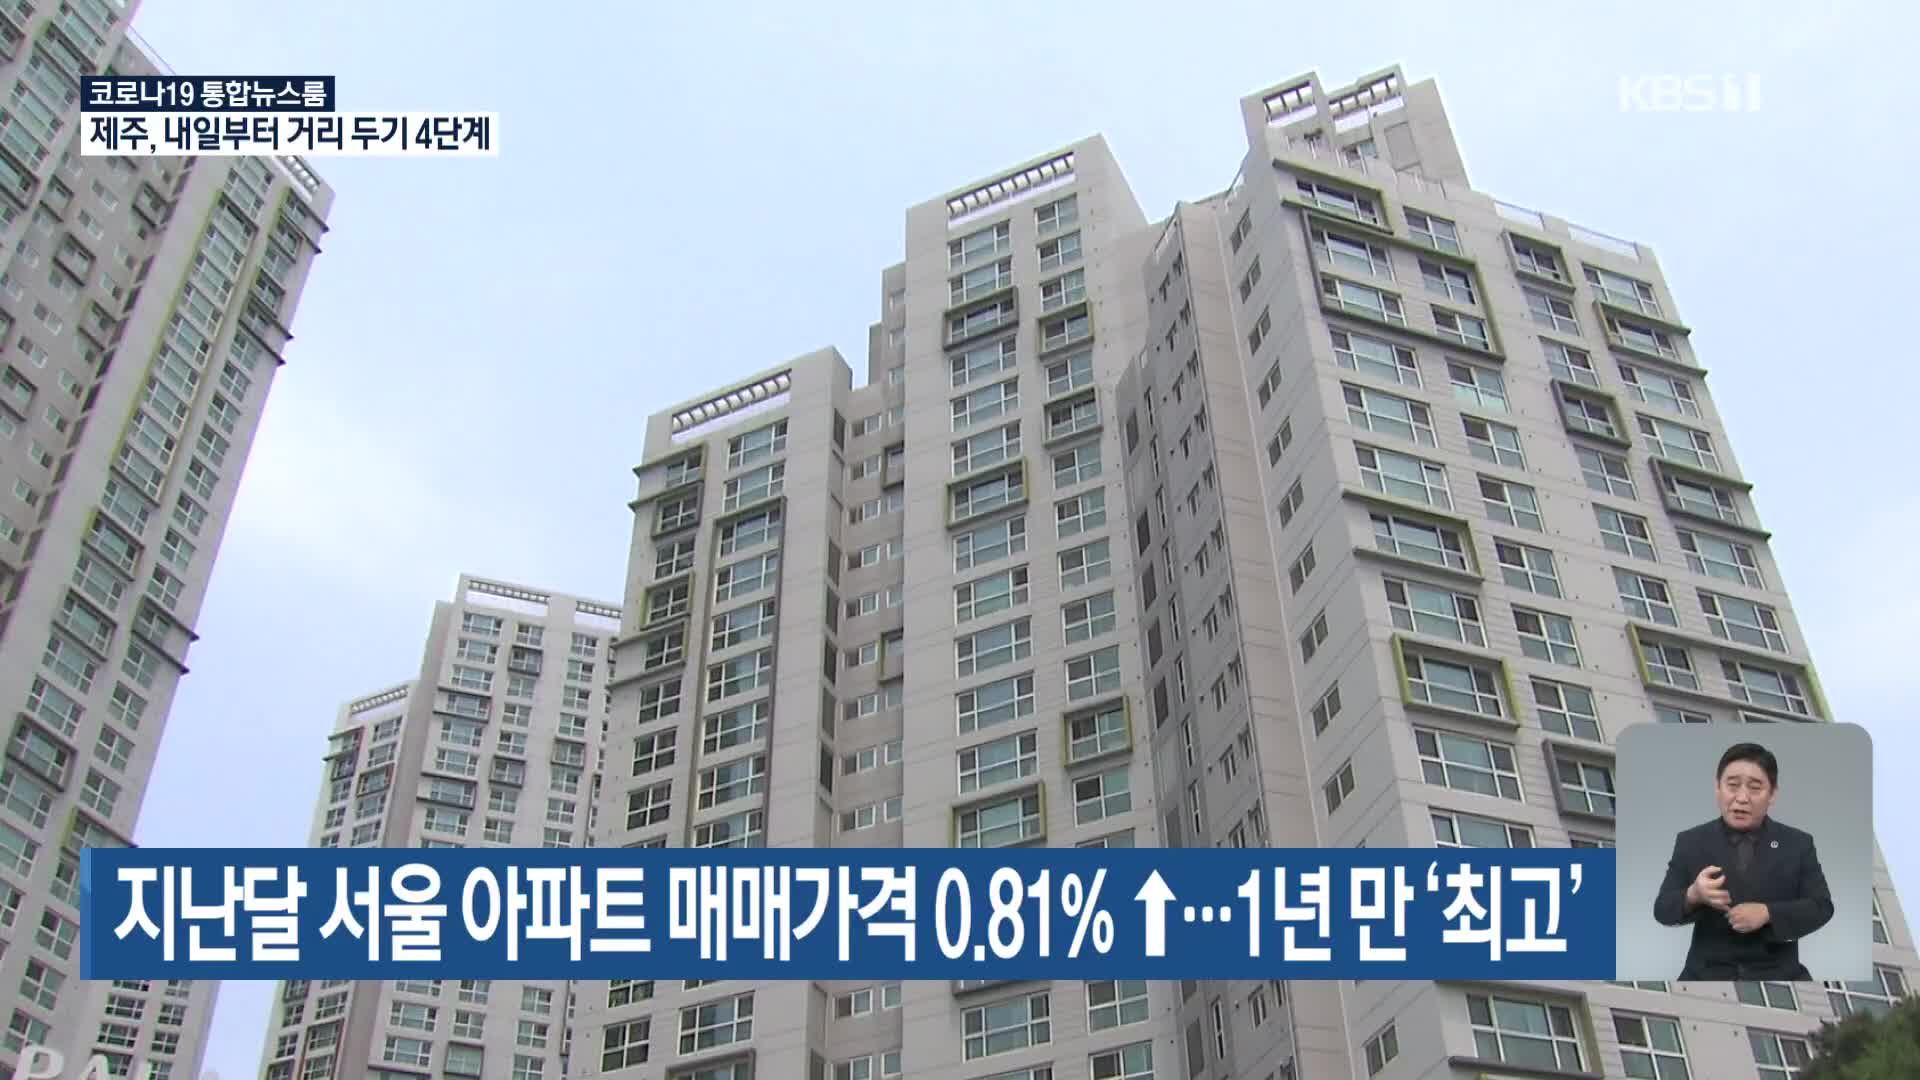 지난달 서울 아파트 매매가격 0.81% ↑…1년 만 ‘최고’